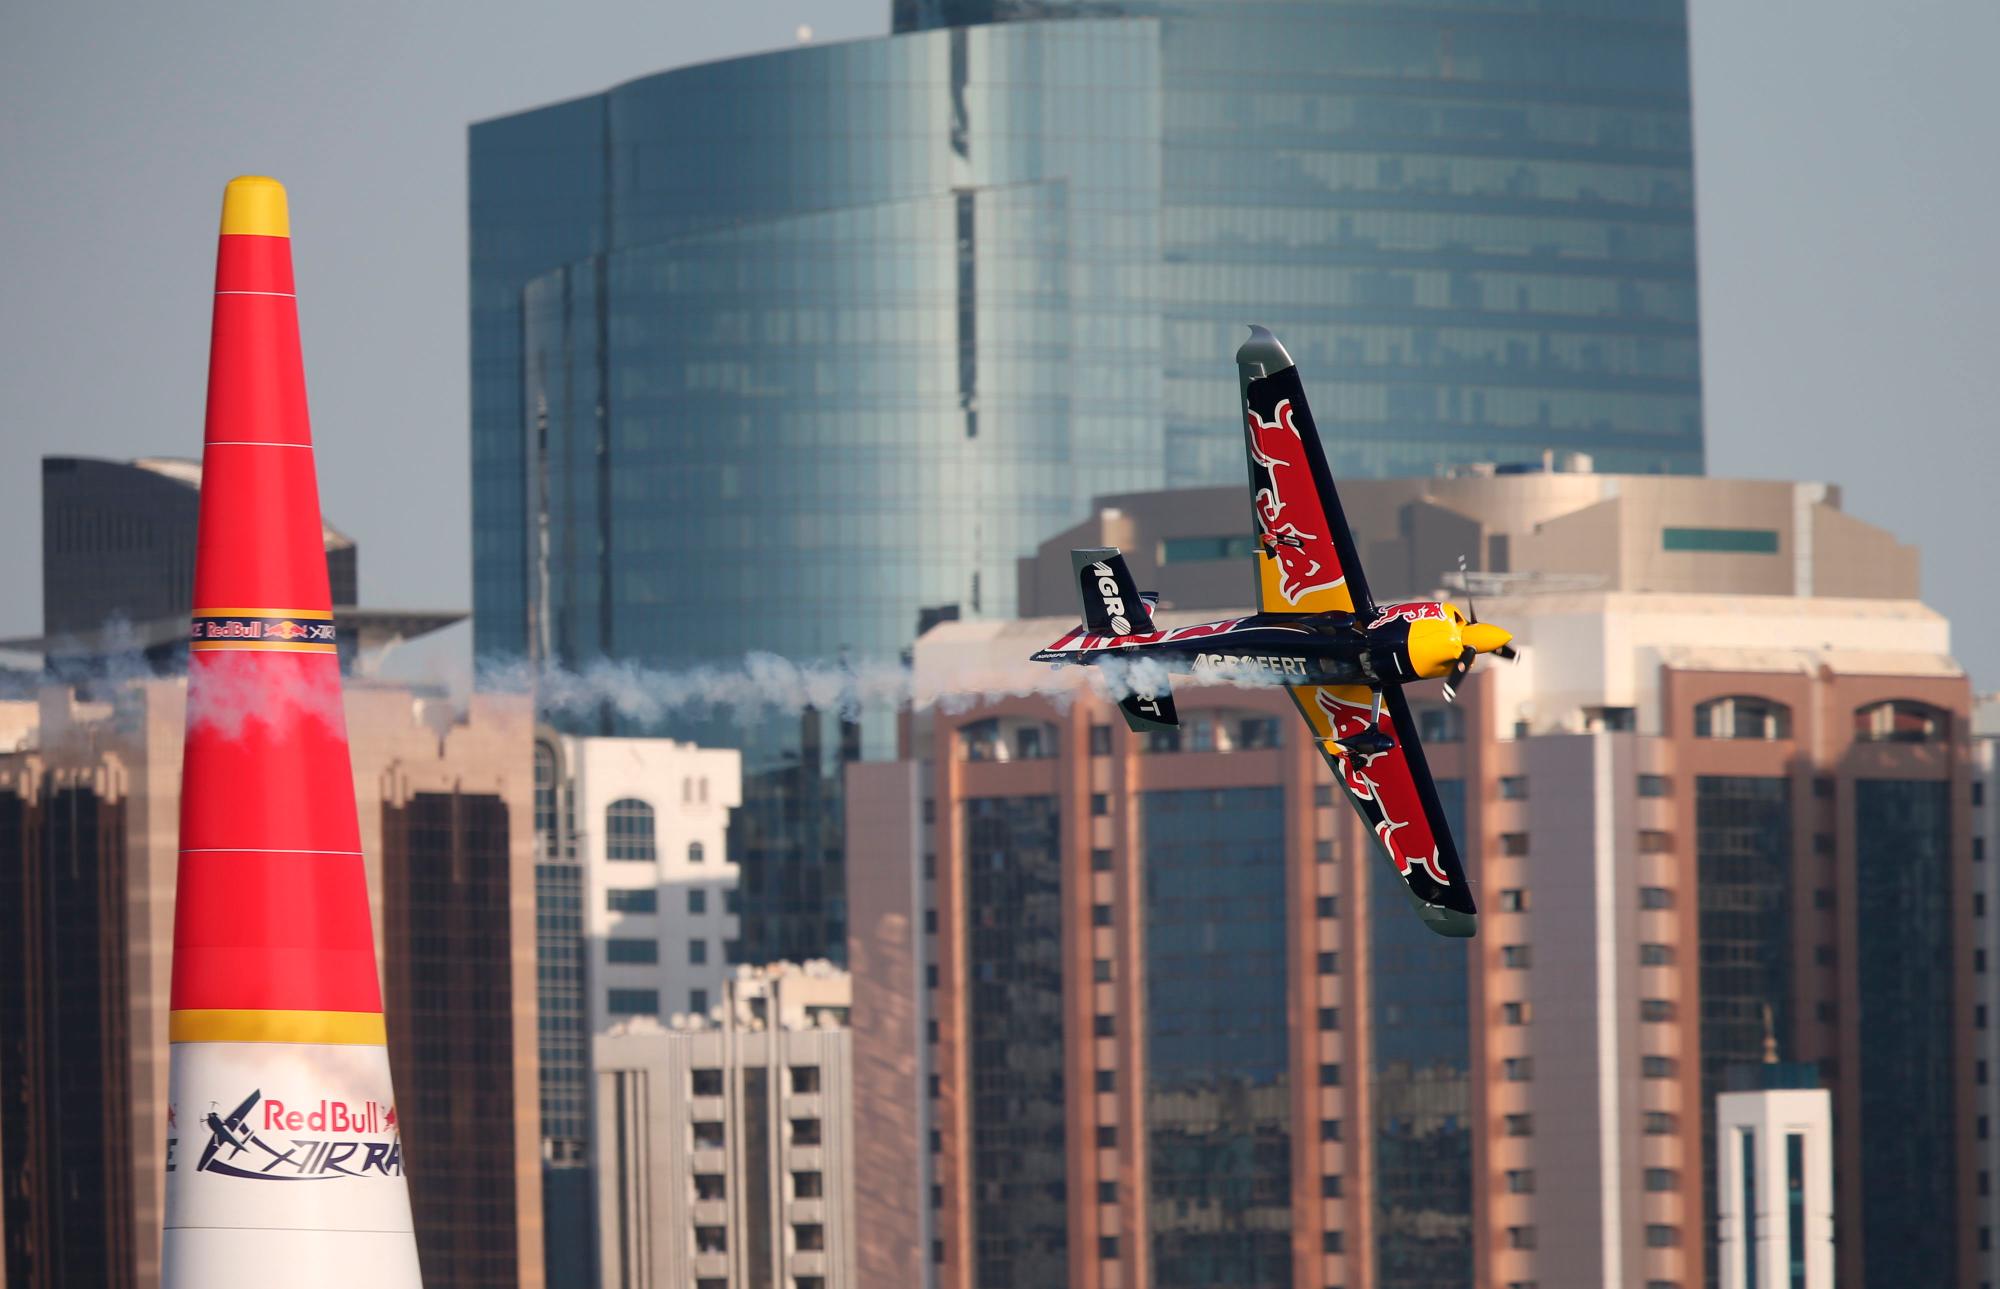 Abu Dhabi (Emiratos Árabes Unidos), 09/02 / 2019.- Martin Sonka, ganador de la segunda posición, se presenta durante los cuatro últimos del Campeonato Mundial Red Bull Air Race en Abu Dhabi, Emiratos Árabes Unidos, 09 de febrero de 2019. (República Checa, Emiratos Árabes Unidos)